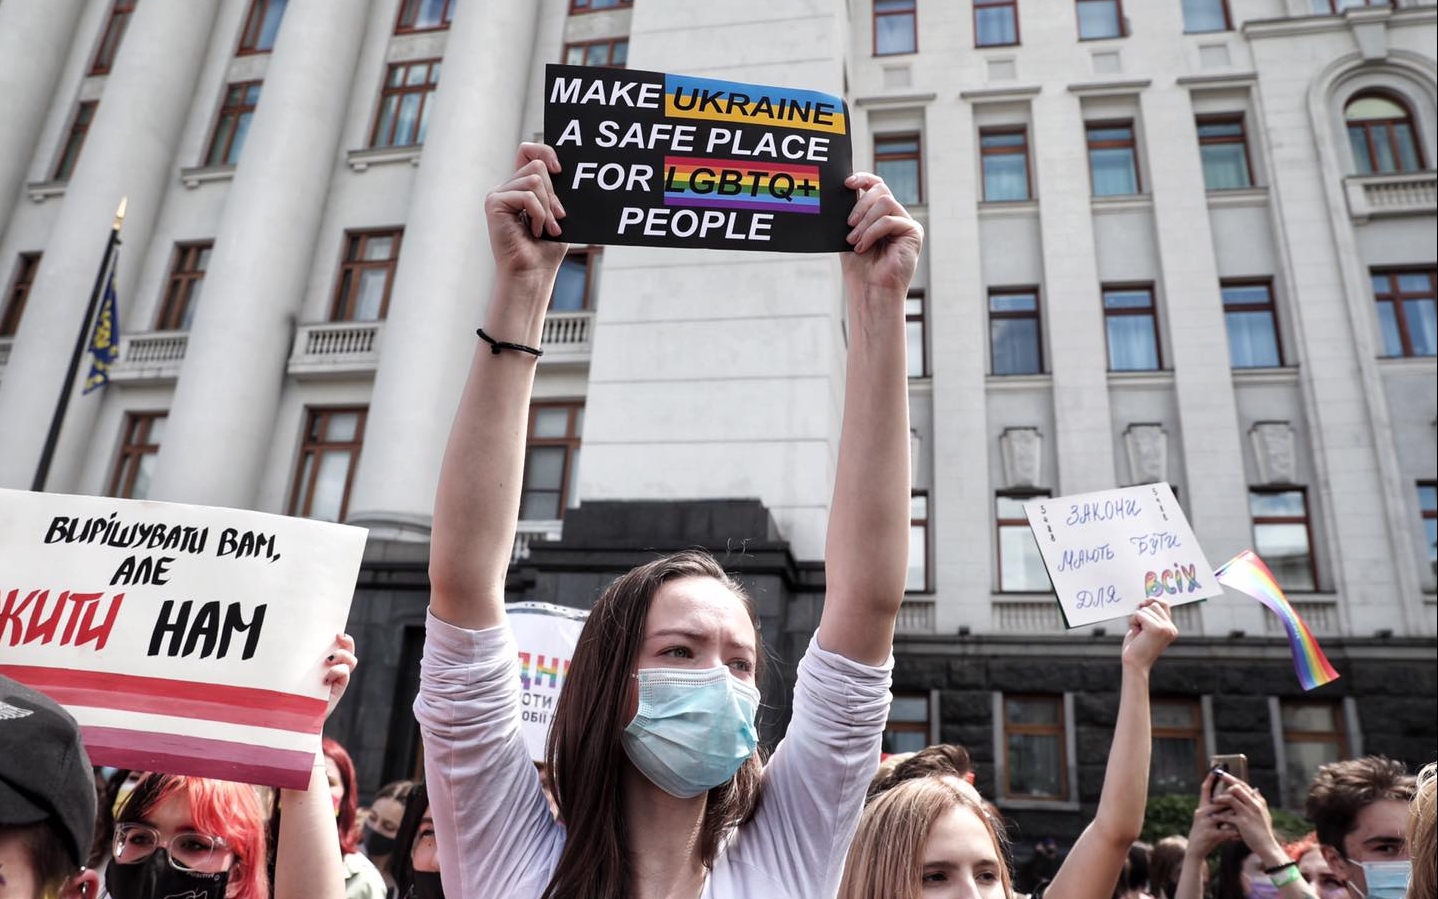 ПриватБанк став на захист прав ЛГБТ+ в Україні